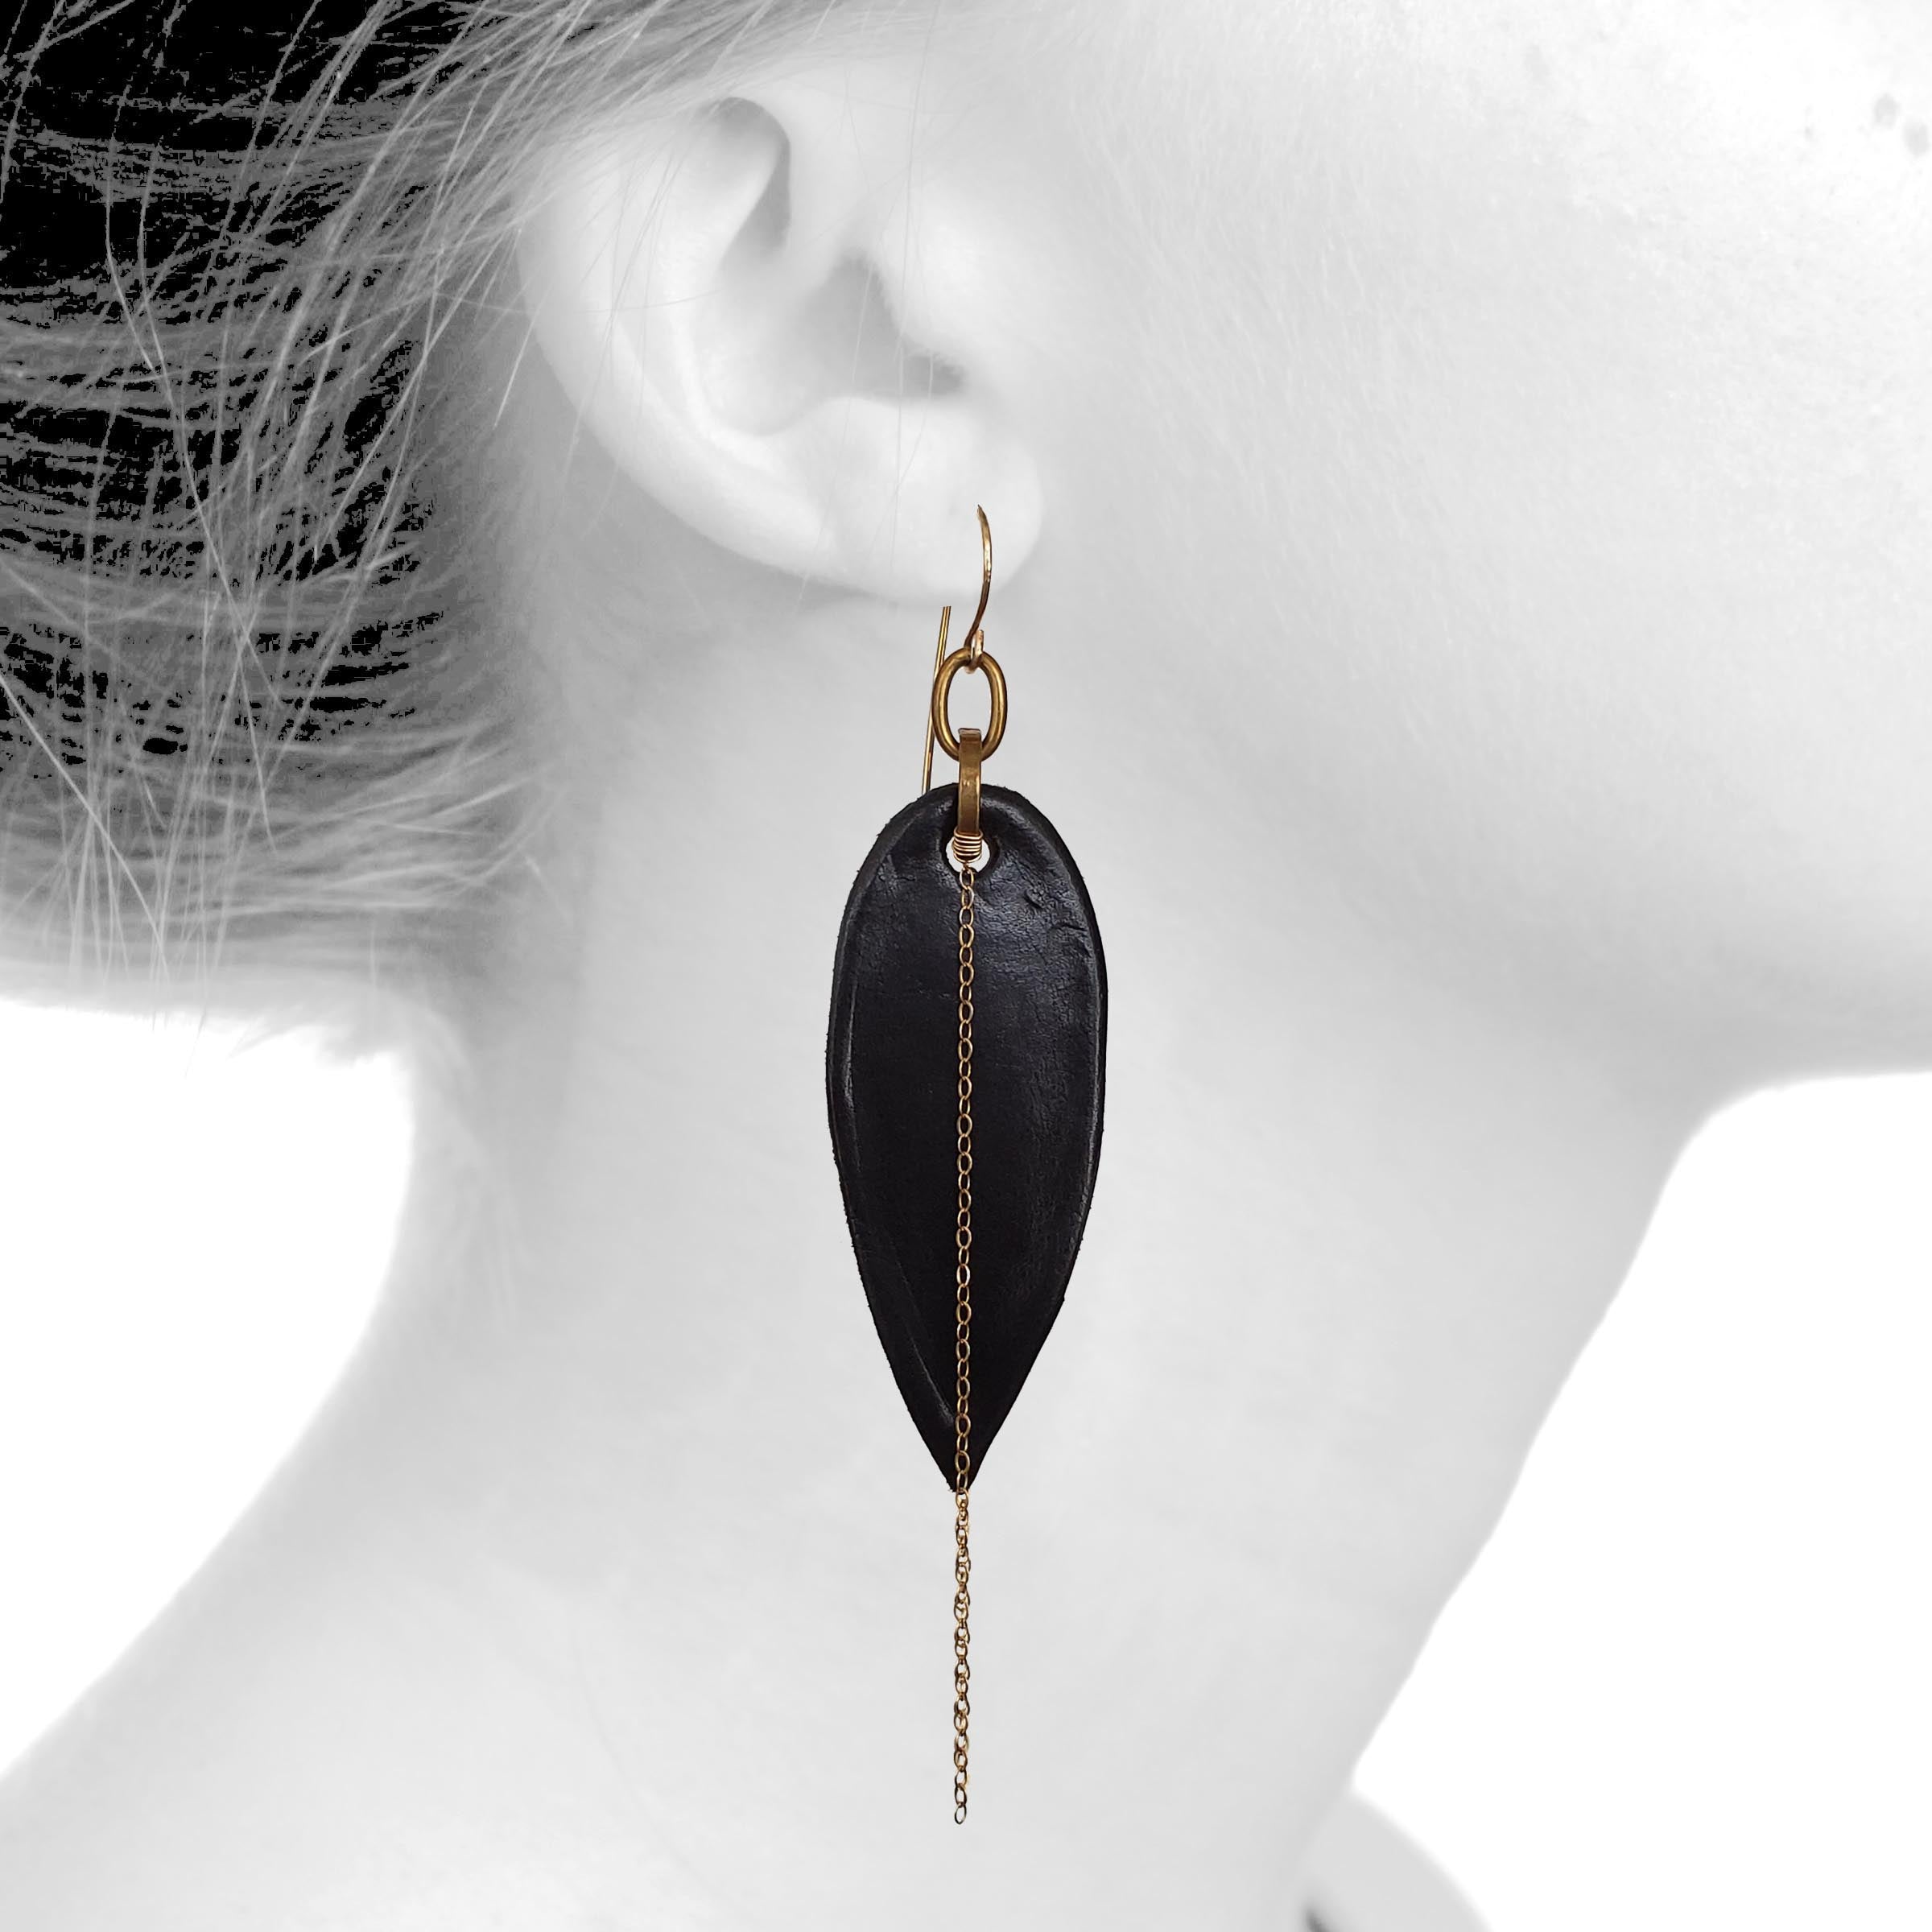 Black and Gold Earrings, Leather Leaf Earring, Leather Earrings, Boho Chic  Earrings, Black Agate Earrings, Long Dangle Earrings Boho Jewelry - Etsy |  Diy leather earrings, Leather jewelry diy, Boho chic earrings